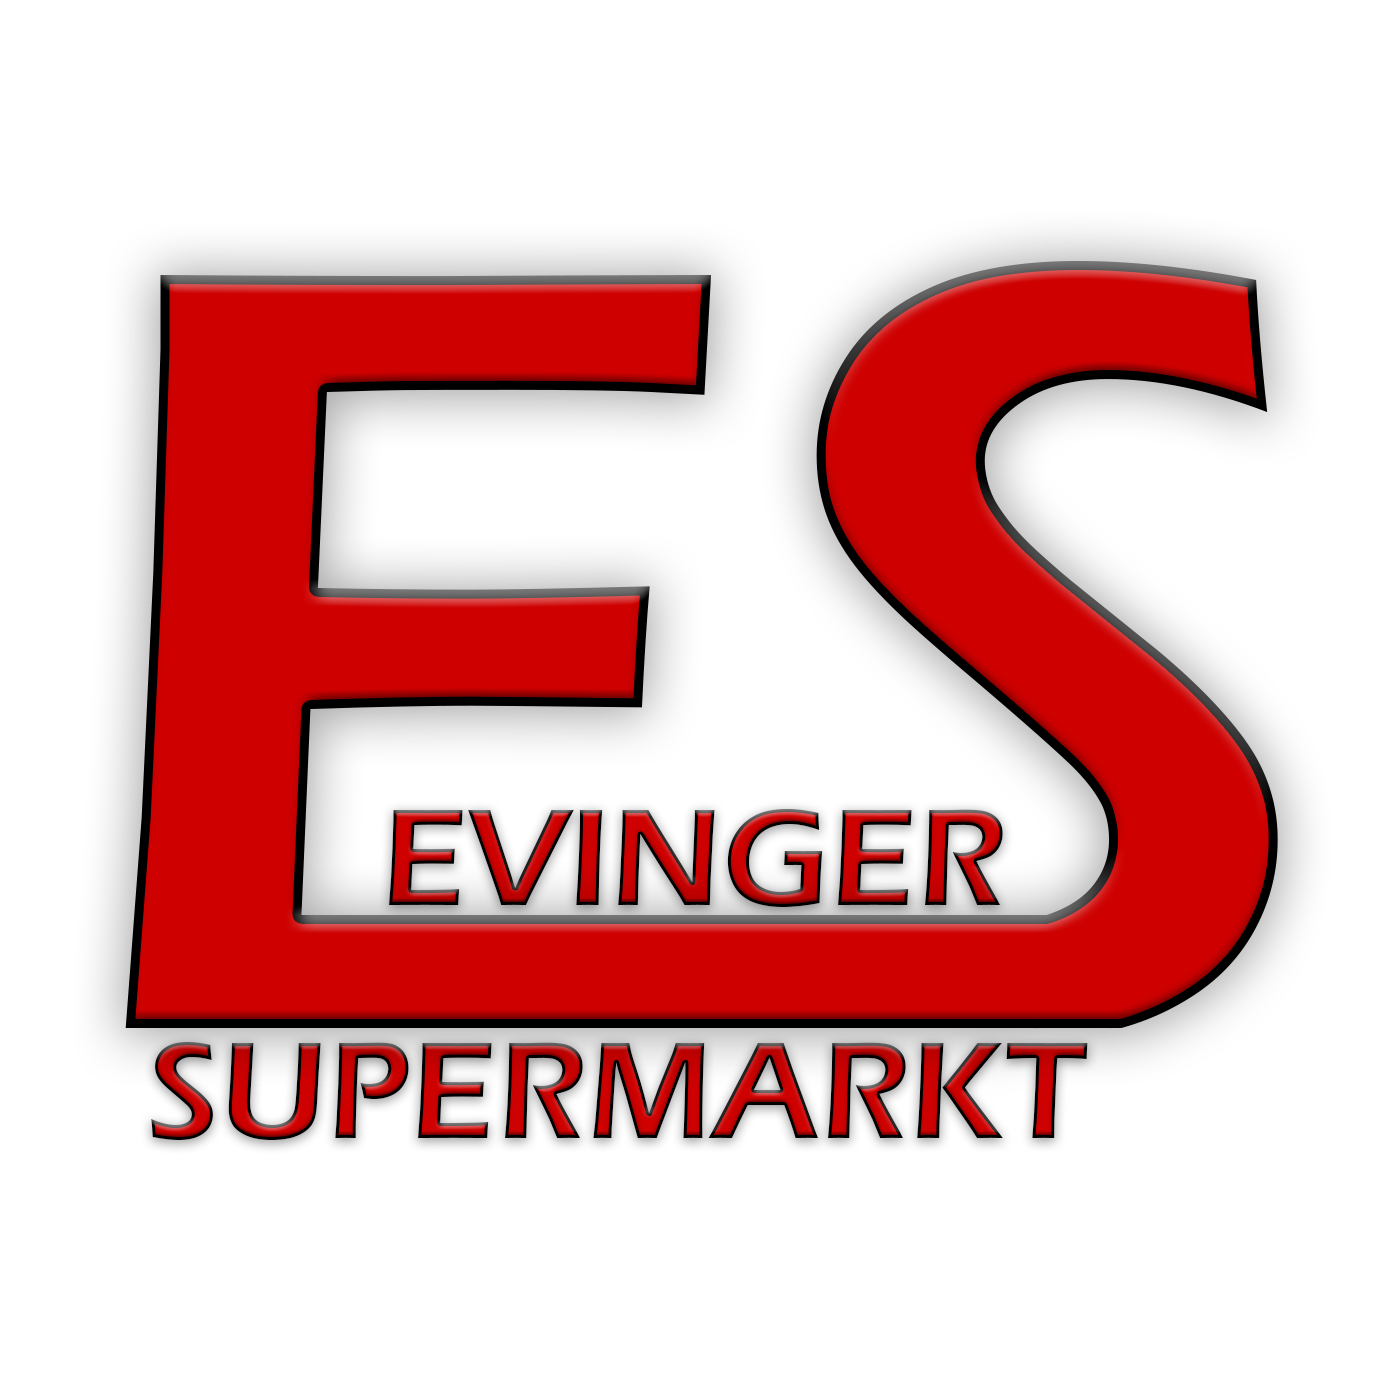 Bild 1 Evinger Supermarkt GmbH in Dortmund